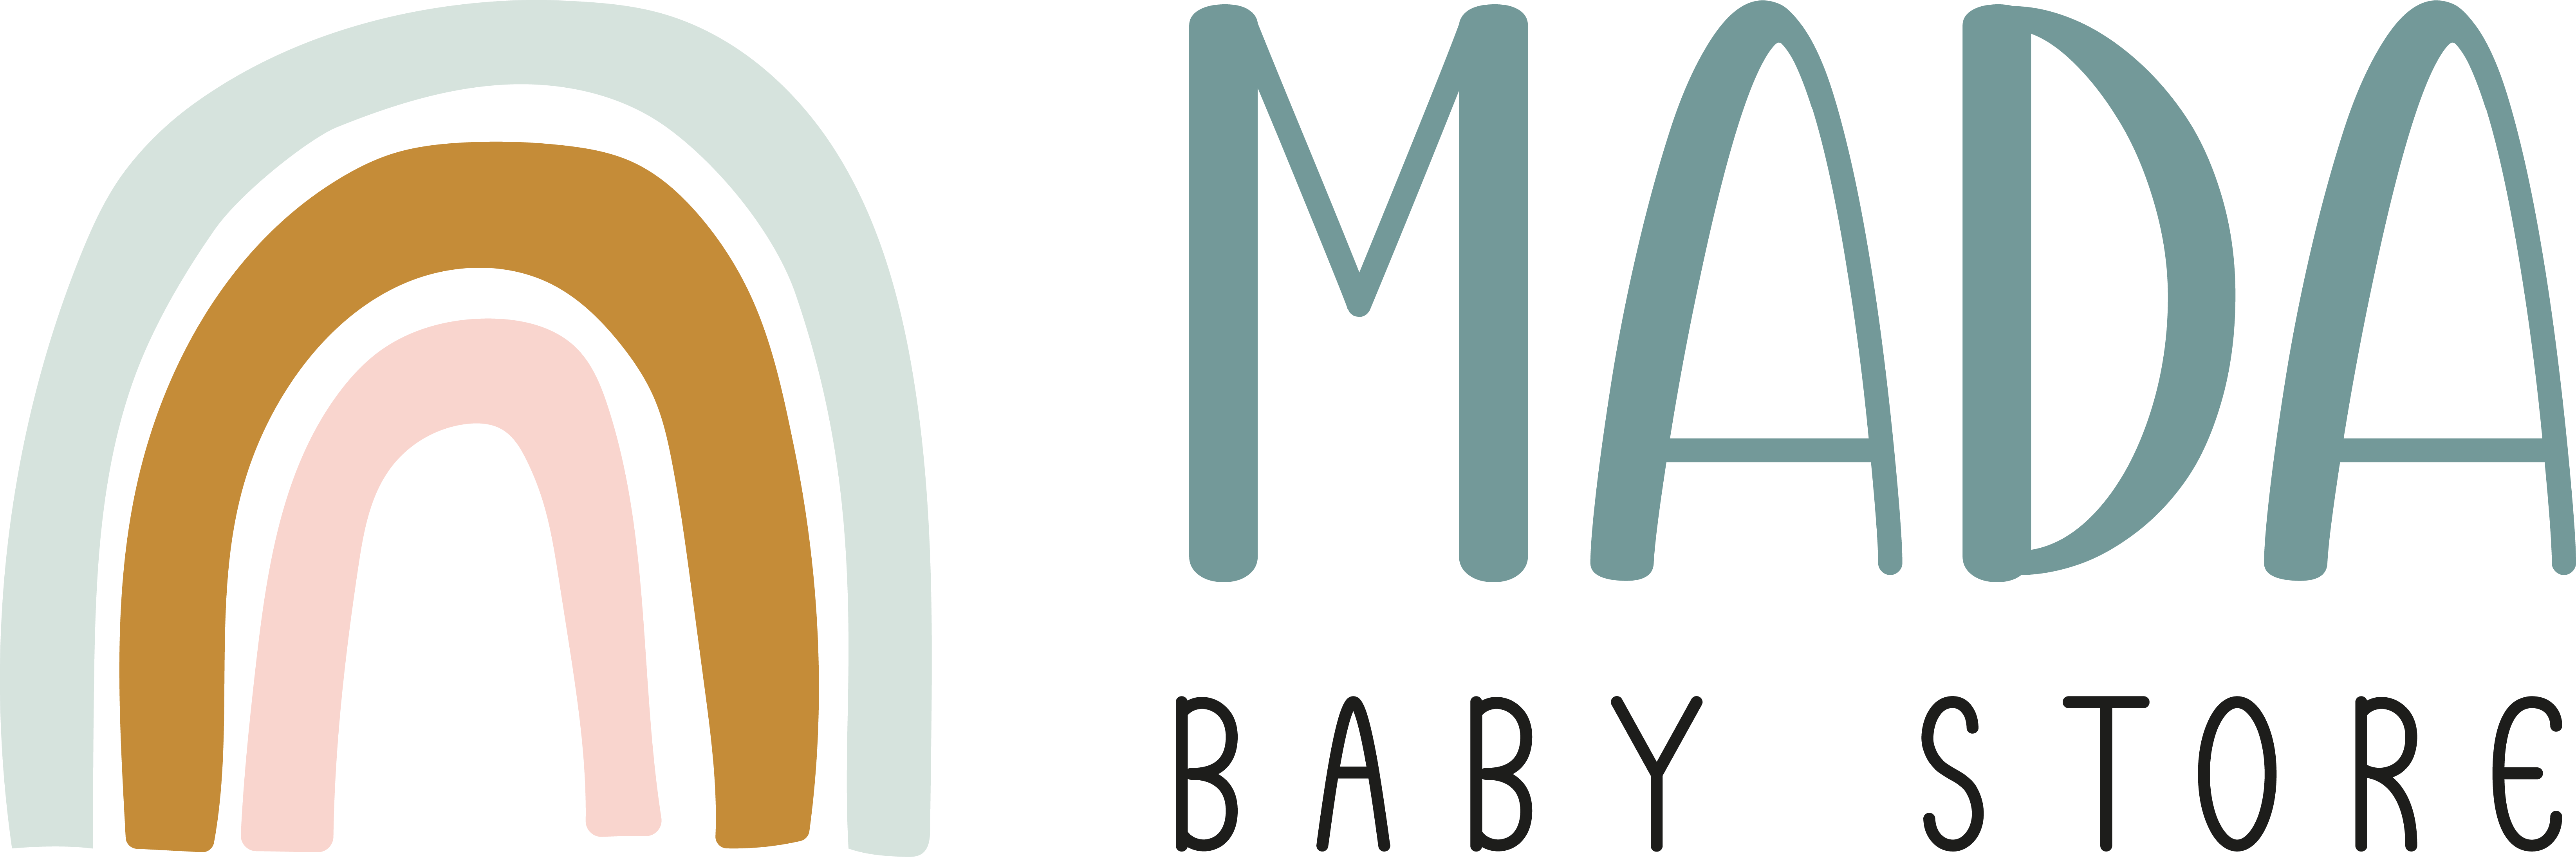 Mada Baby Store